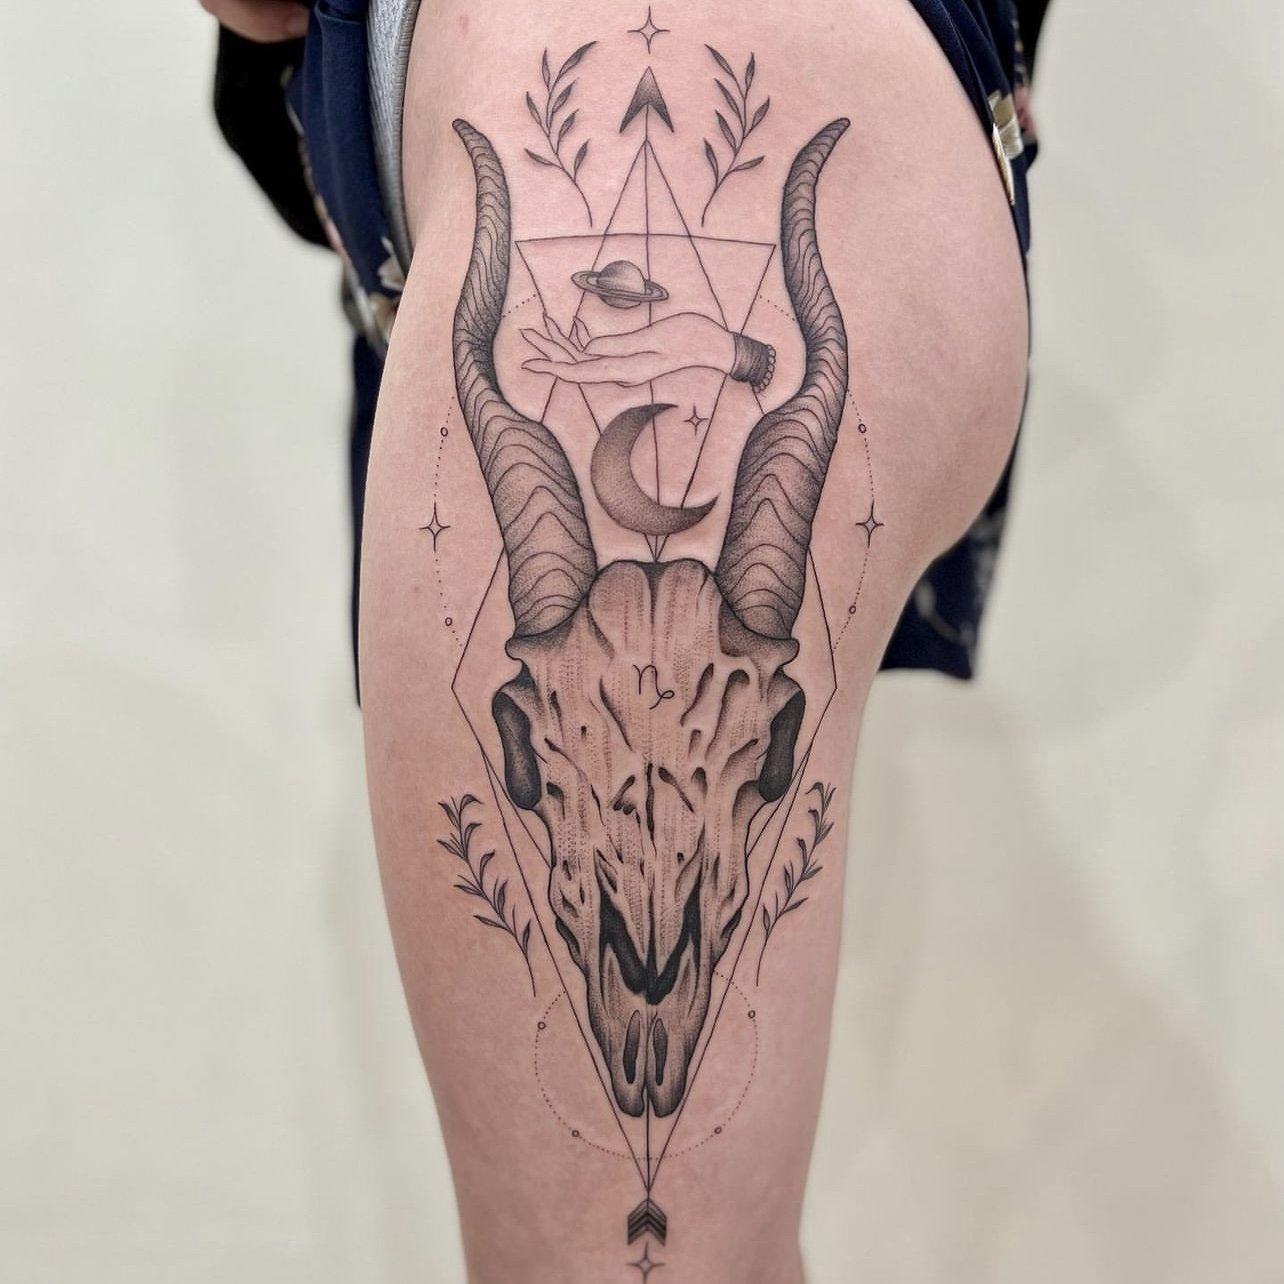 Resident Tattoo Artist - Sid | Thirteen Feet Tattoo